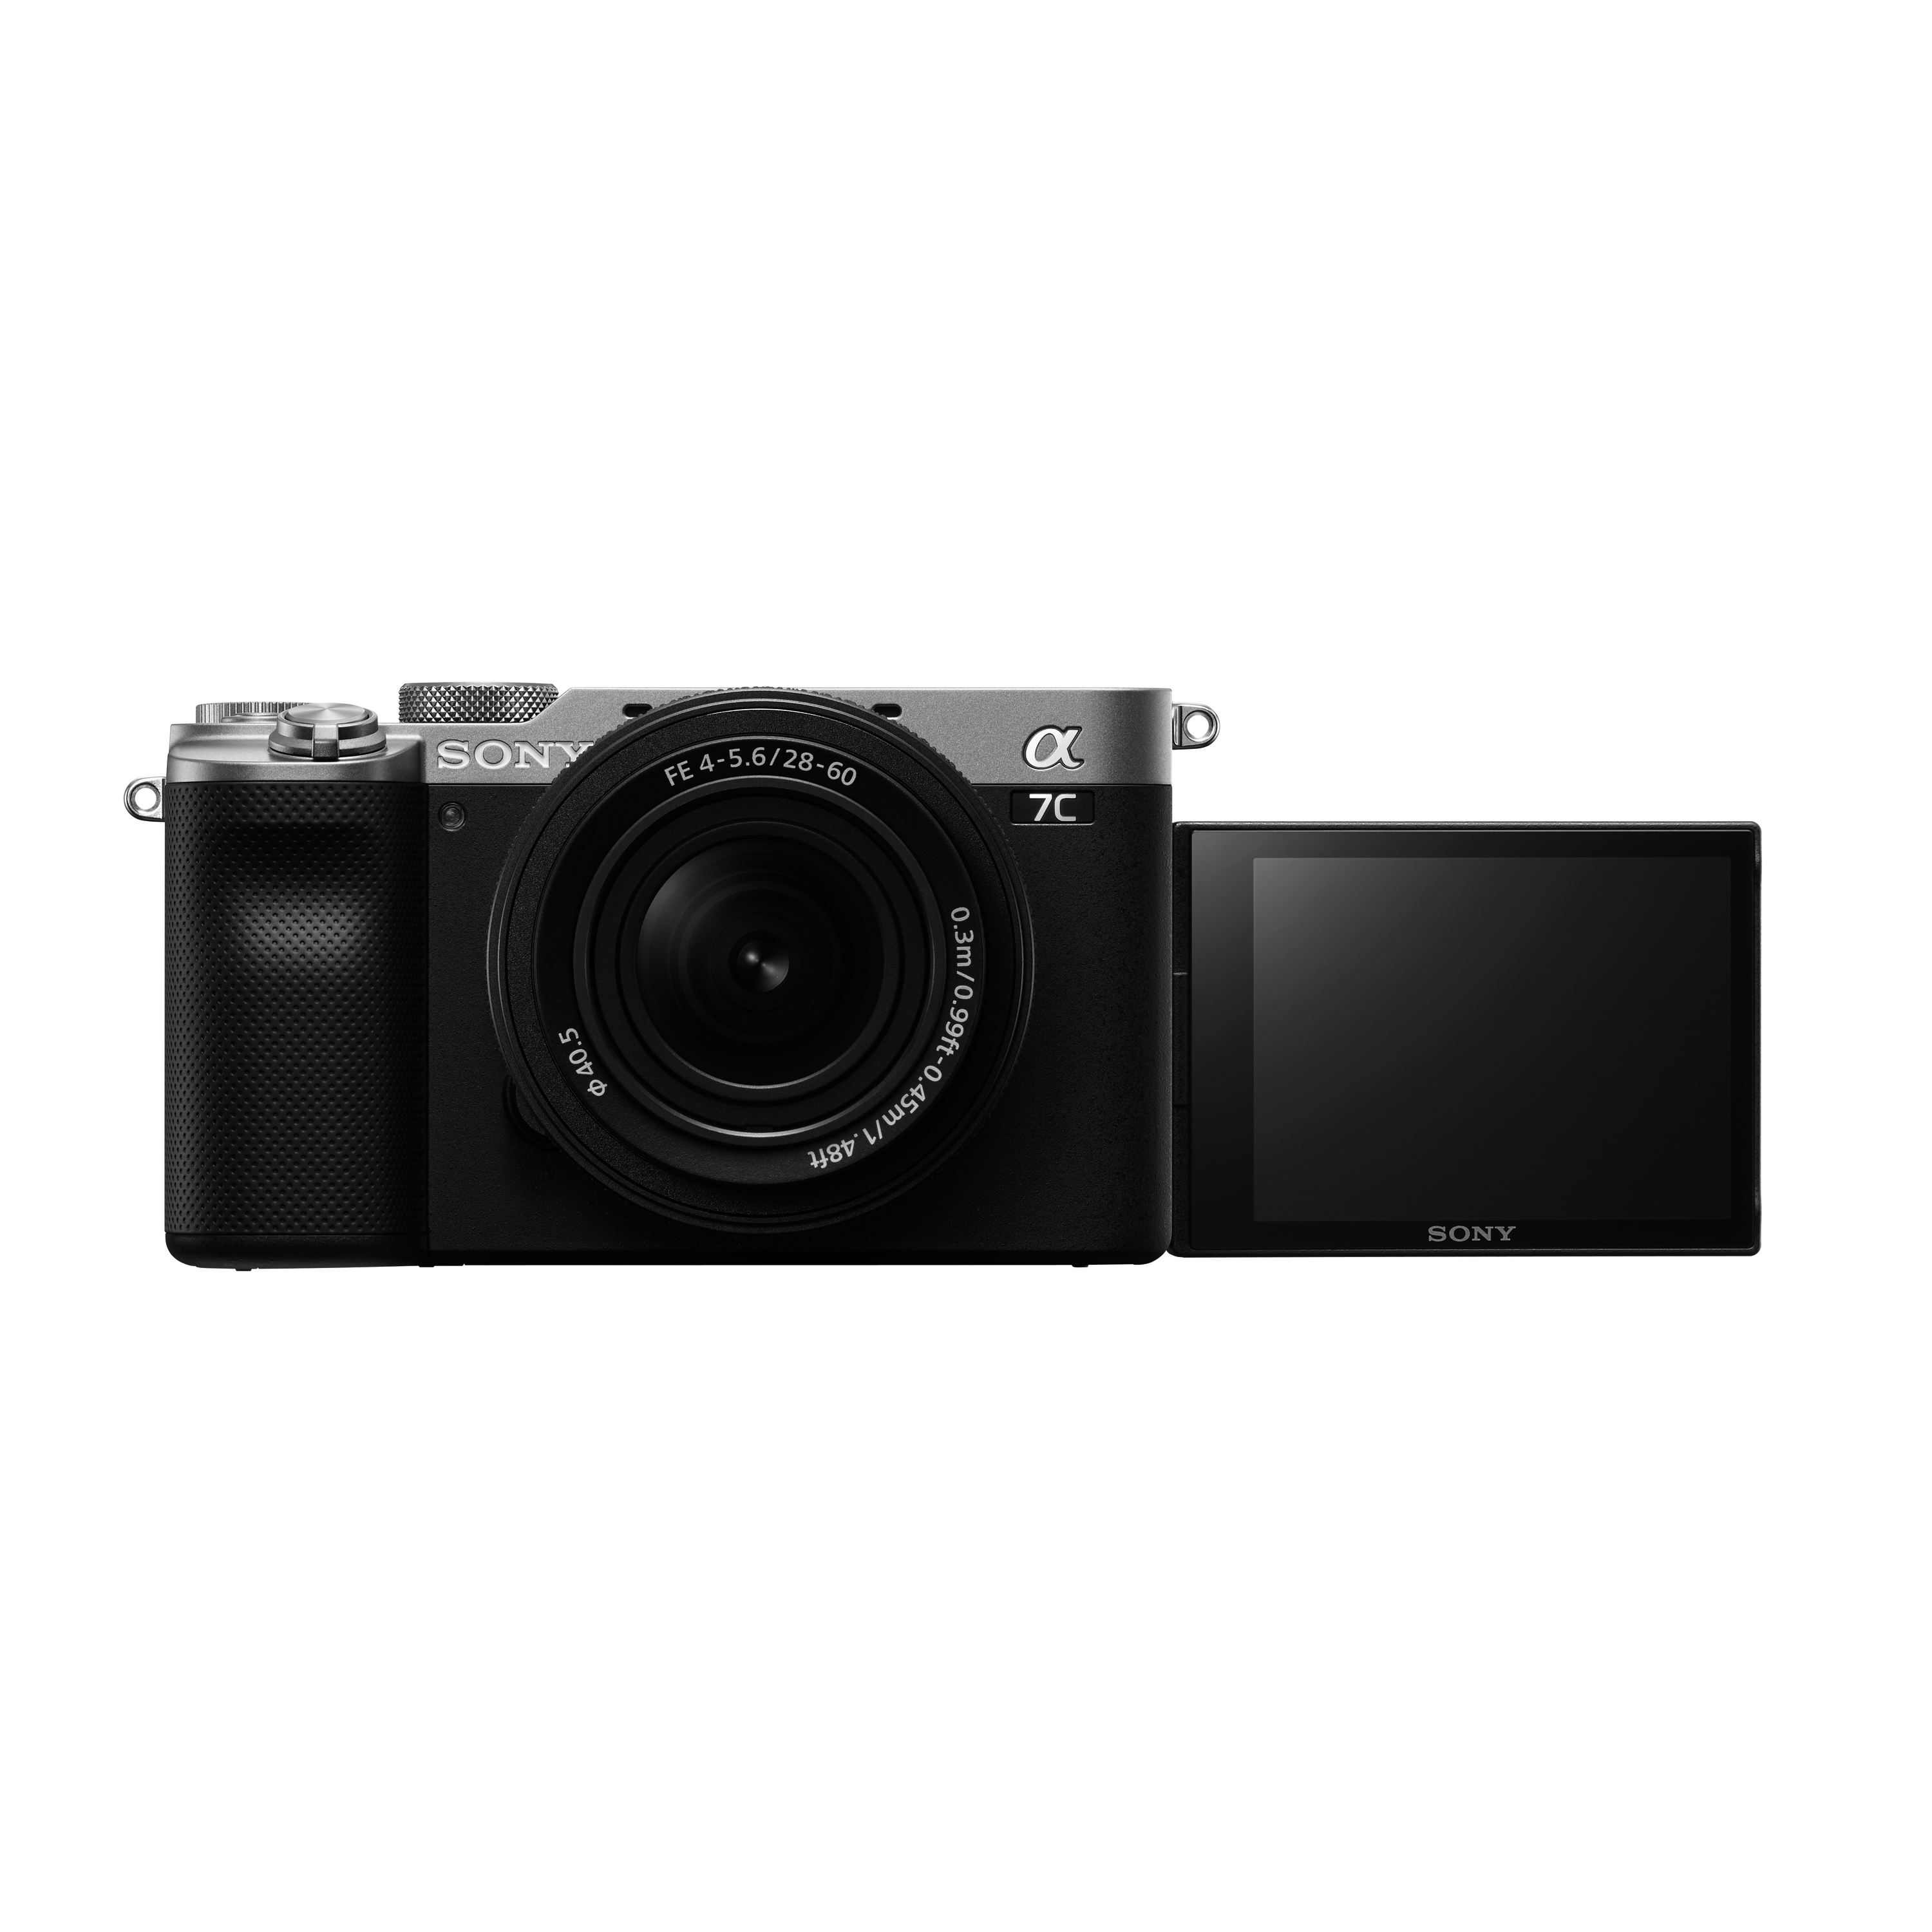 α7C - 數位單眼相機- Sony 台灣官方購物網站- Sony Store, Online (Taiwan)